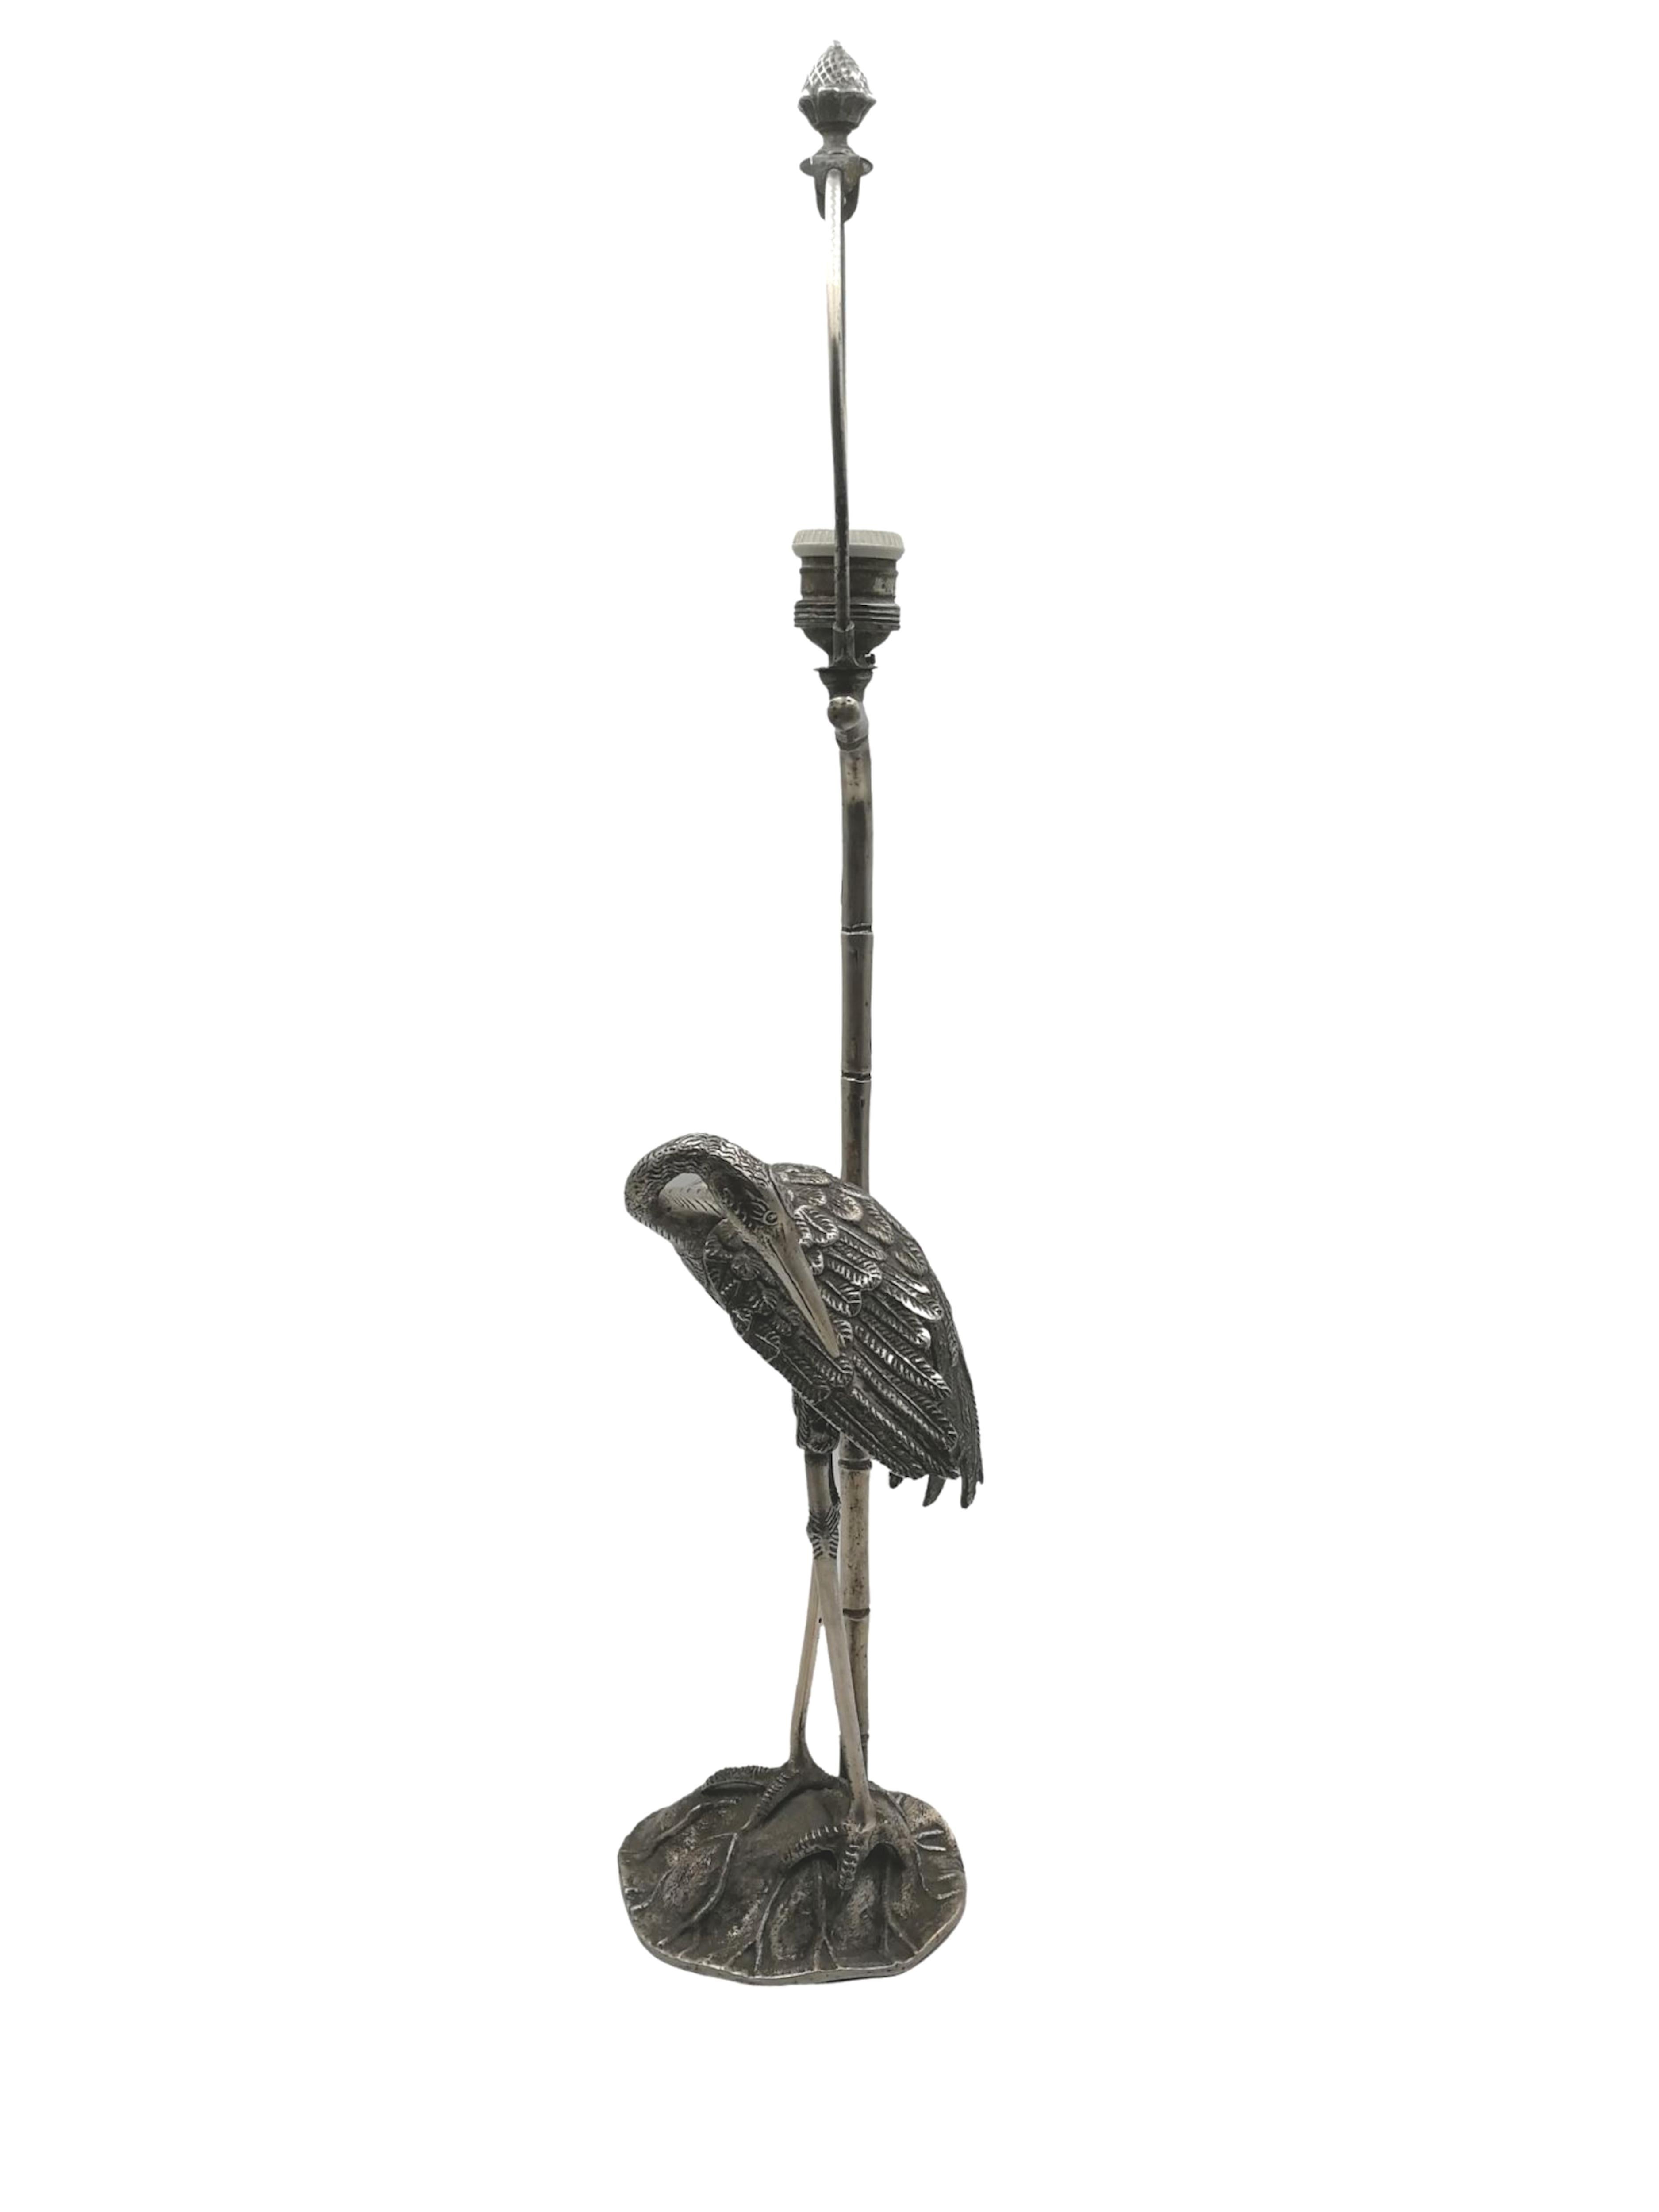 Superbe lampe Art déco en bronze argenté représentant un héron, avec un support d'abat-jour en faux bambou, conçue par la prestigieuse Maison Baguès de Paris, vers 1940. 
Vendu sans l'abat-jour.
Lampe de chevet ou lampe de table.
Très décoratif.
Un